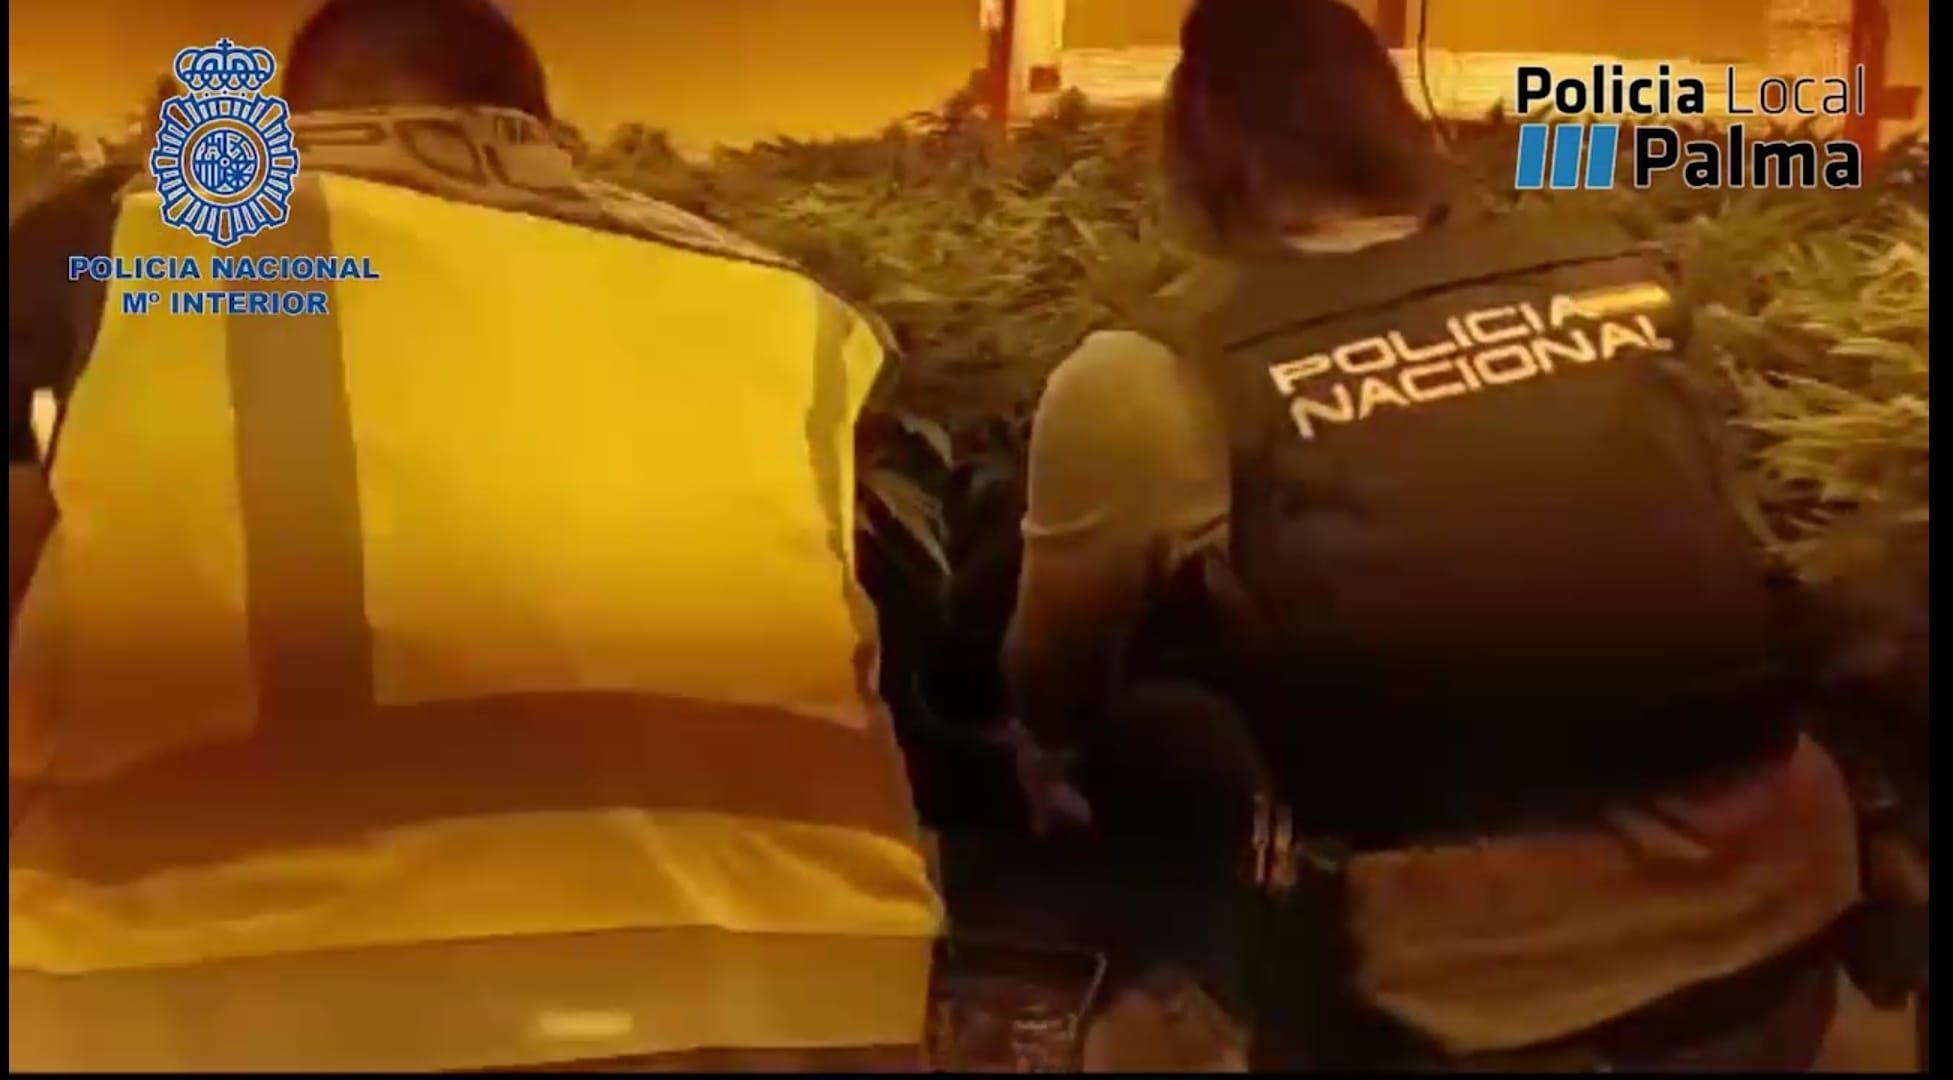 La Policía desmantela dos de los puntos de venta de marihuana más activos de Palma